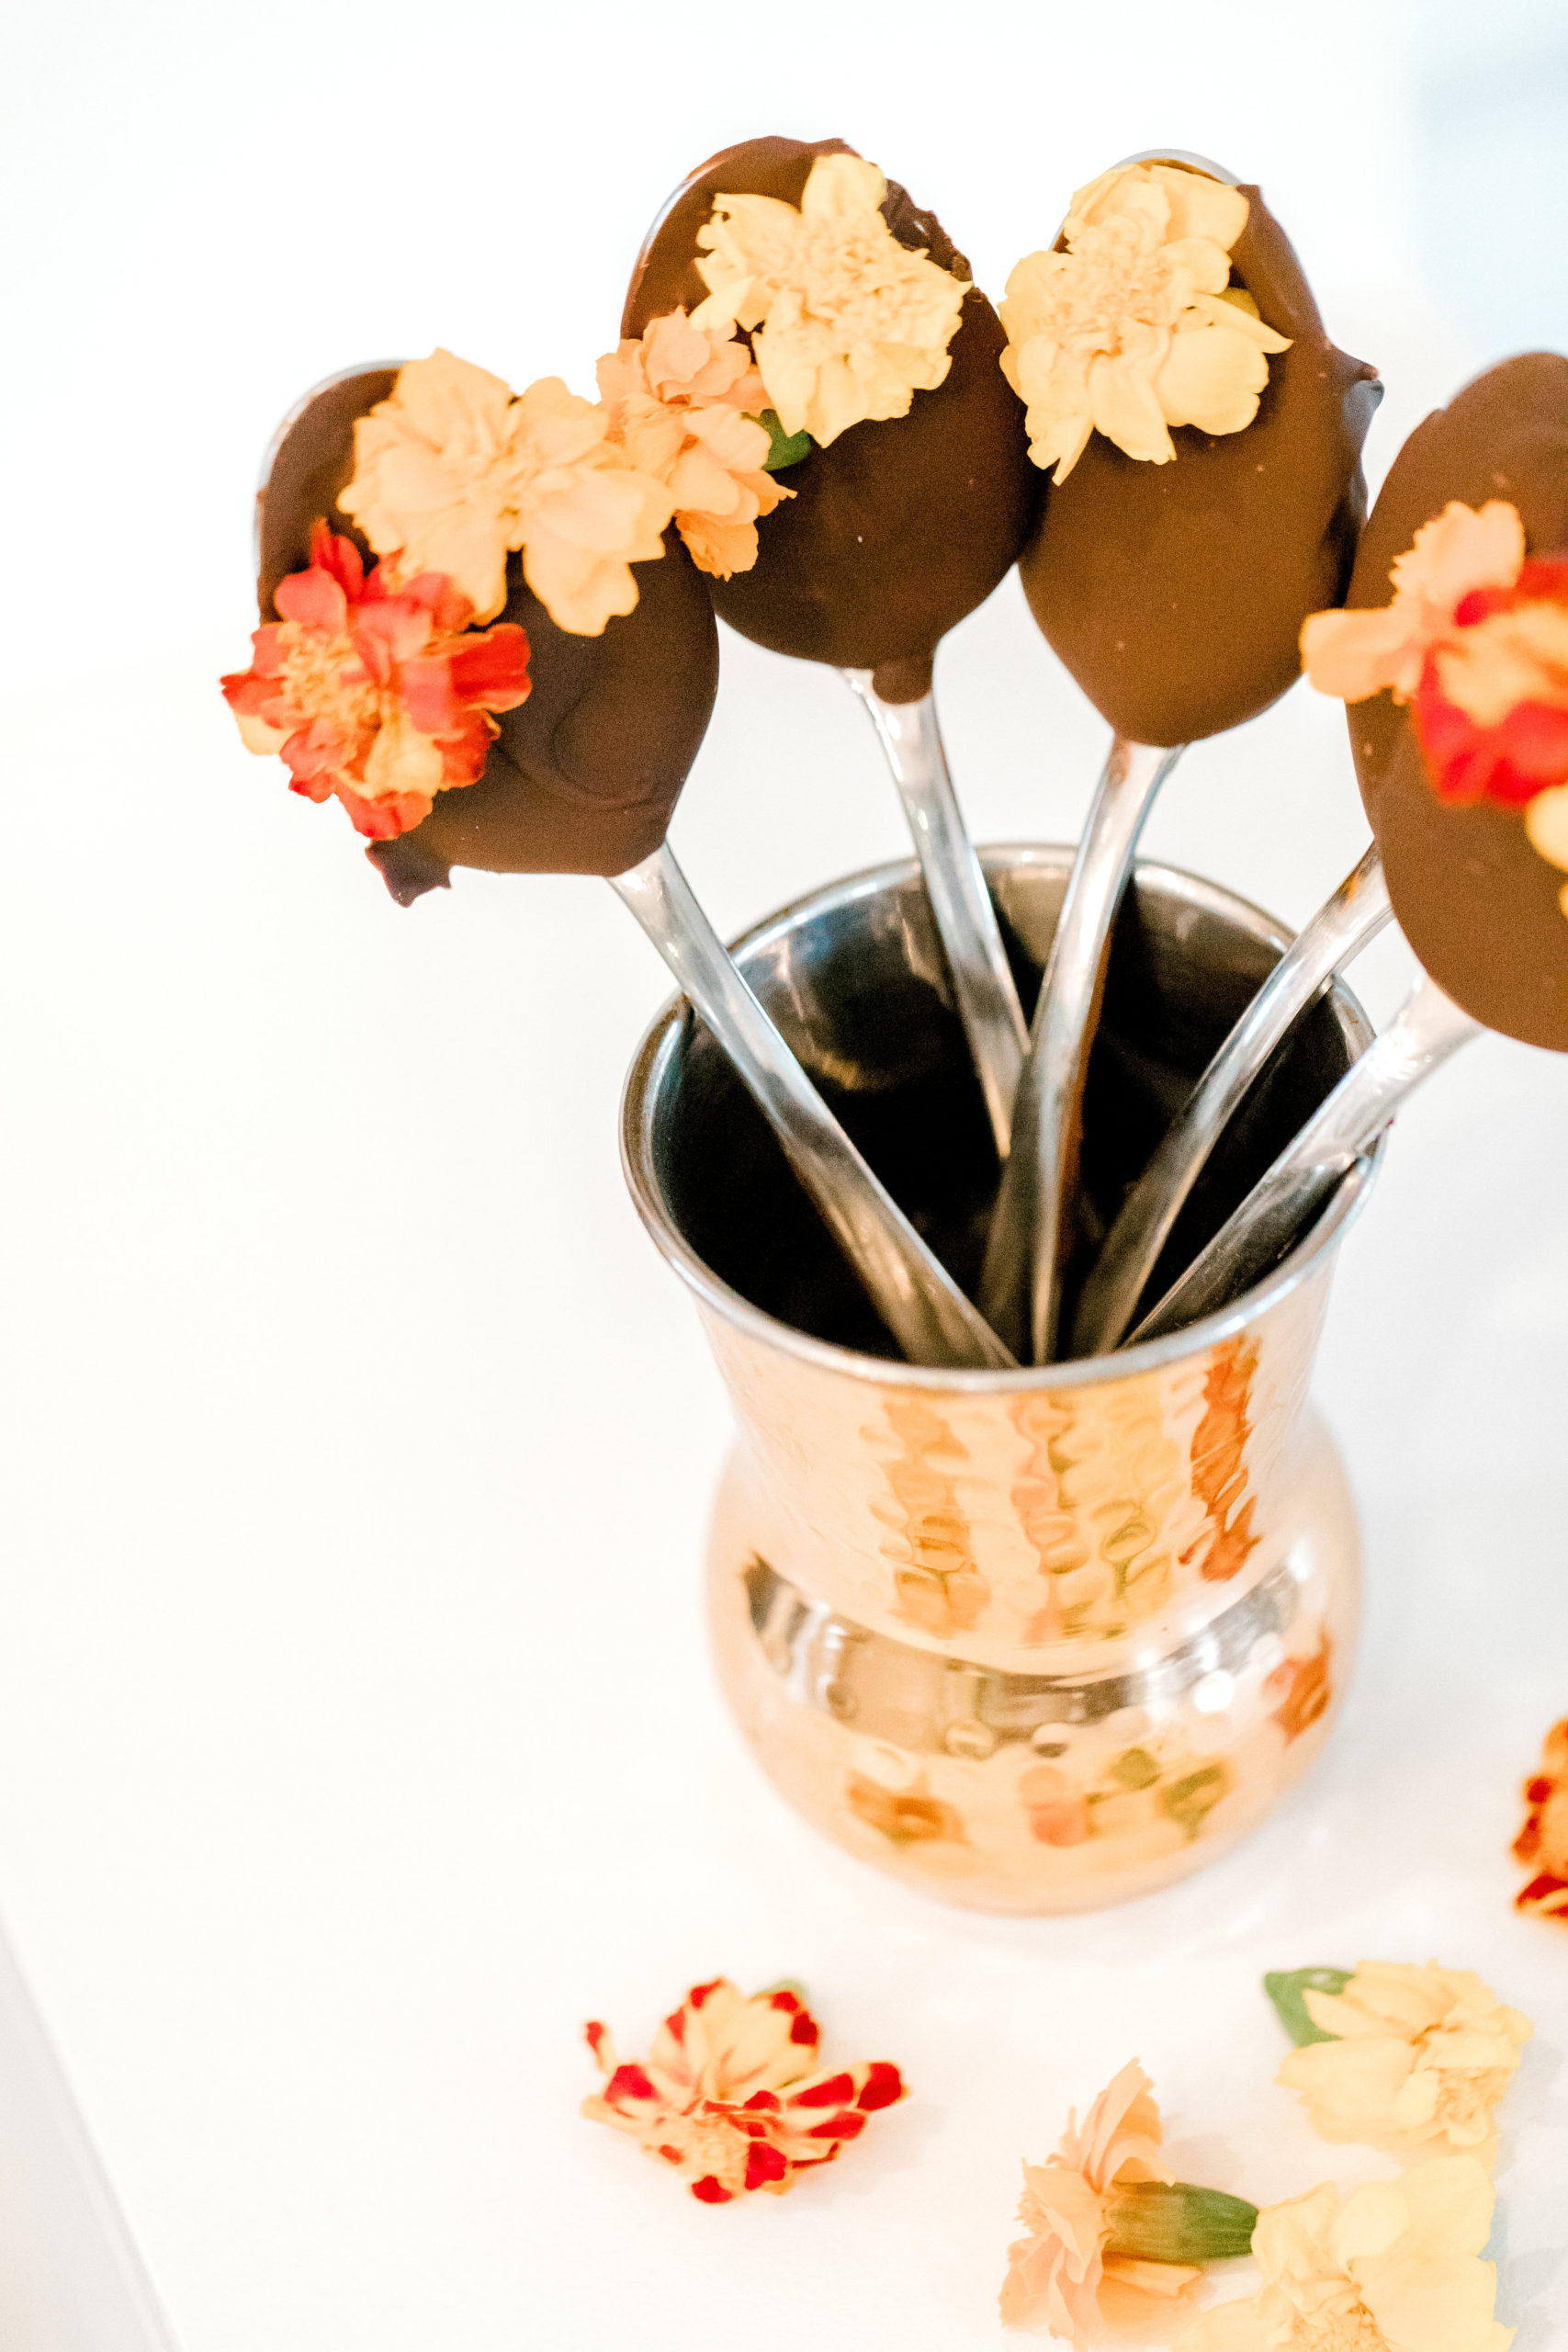 Colheres com cobertura de chocolate Tamera Mowry's + flores comestíveis -  Mulheres de Hoje